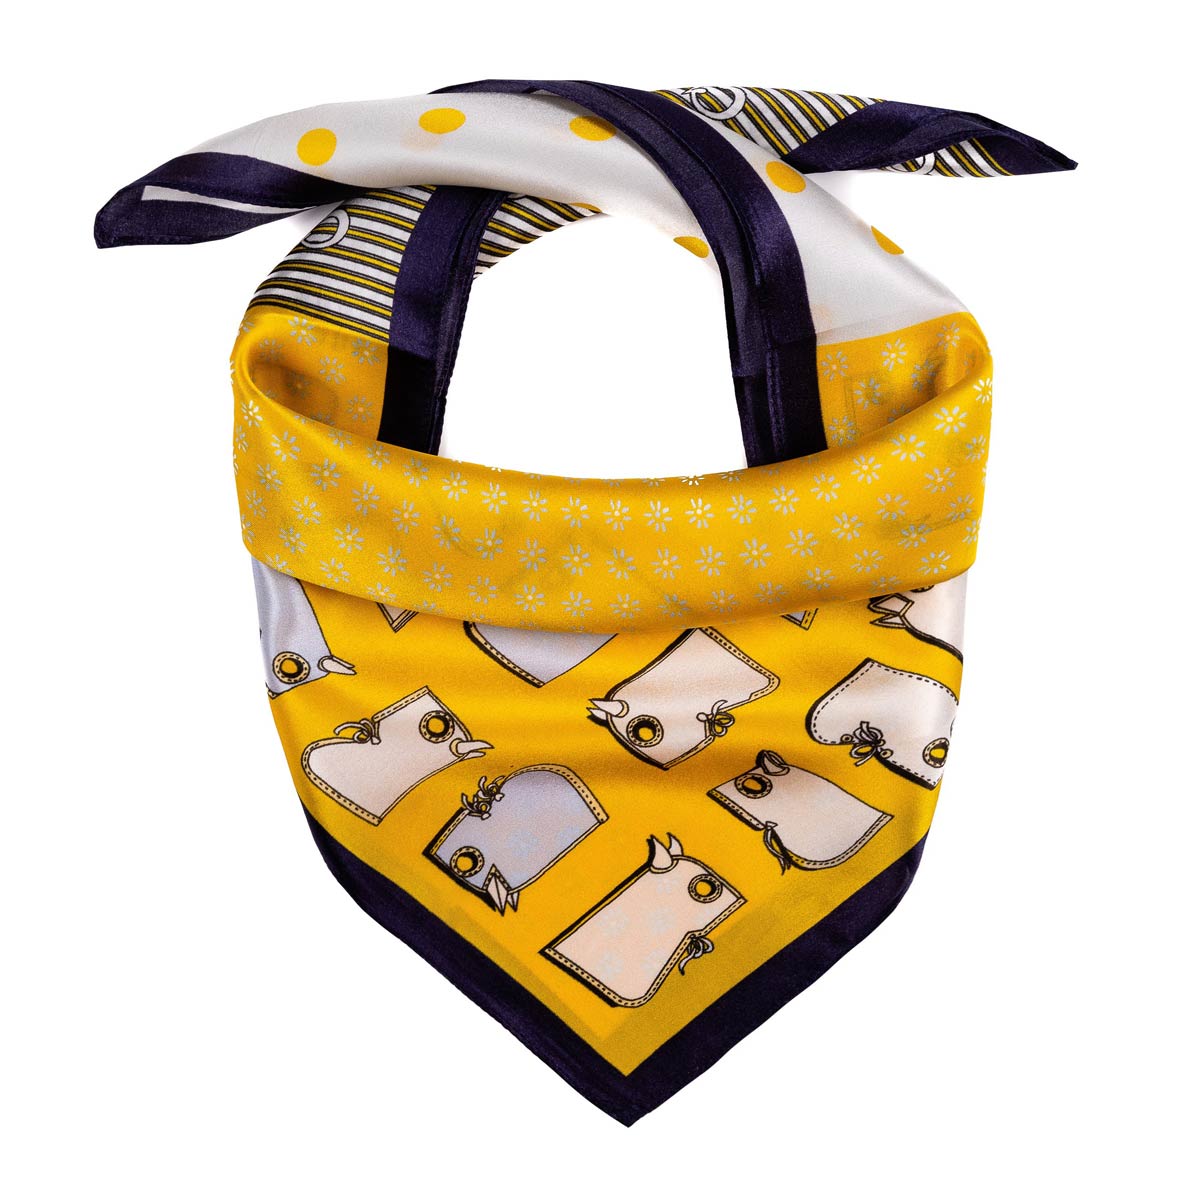 AT-06464_F12-1-foulard-soie-pois-jaune